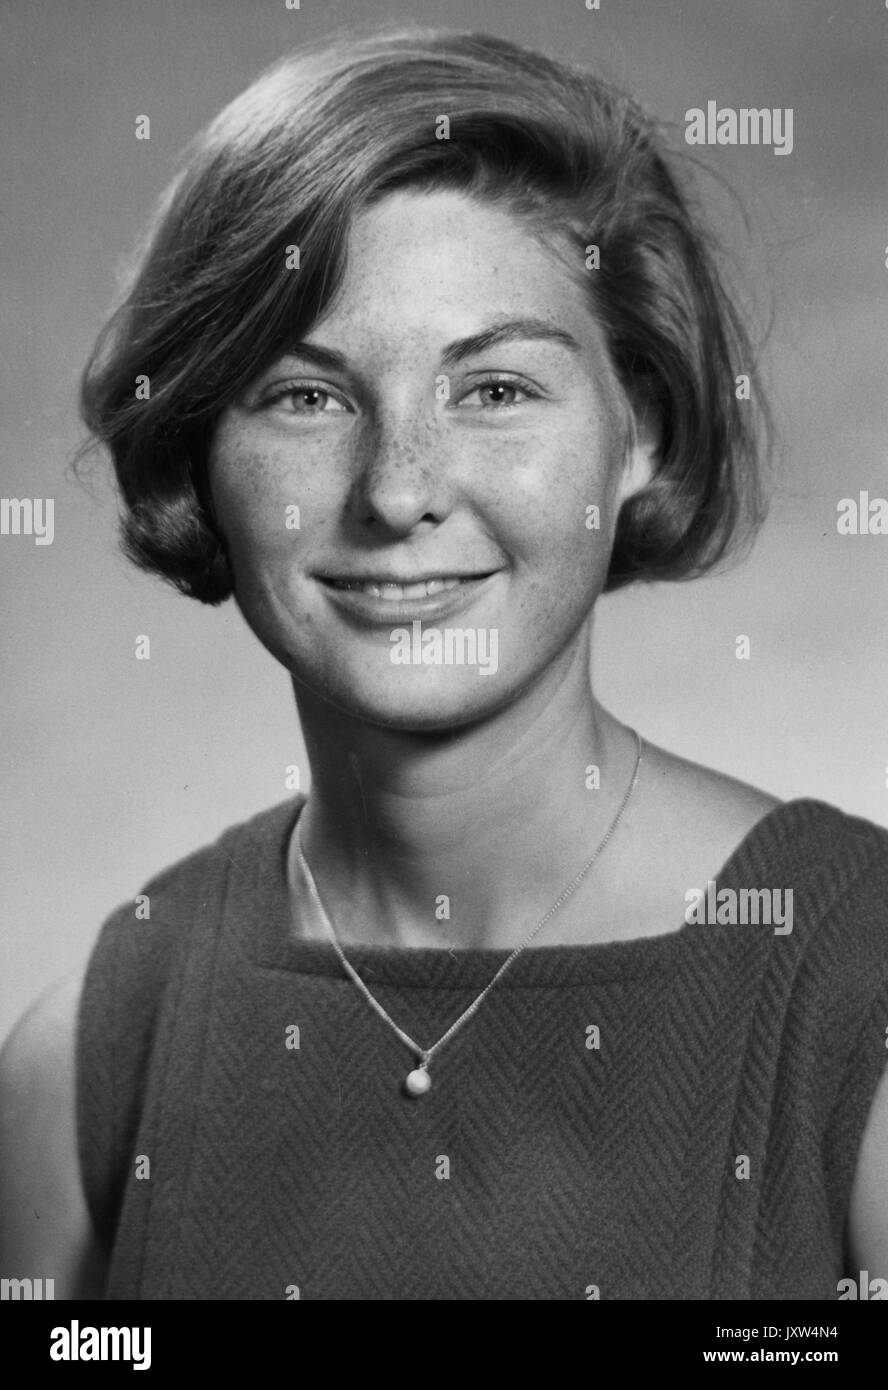 Dorothy jean nero, ritratto fotografia, torace, full face, c 25 anni di età, 1966. Foto Stock